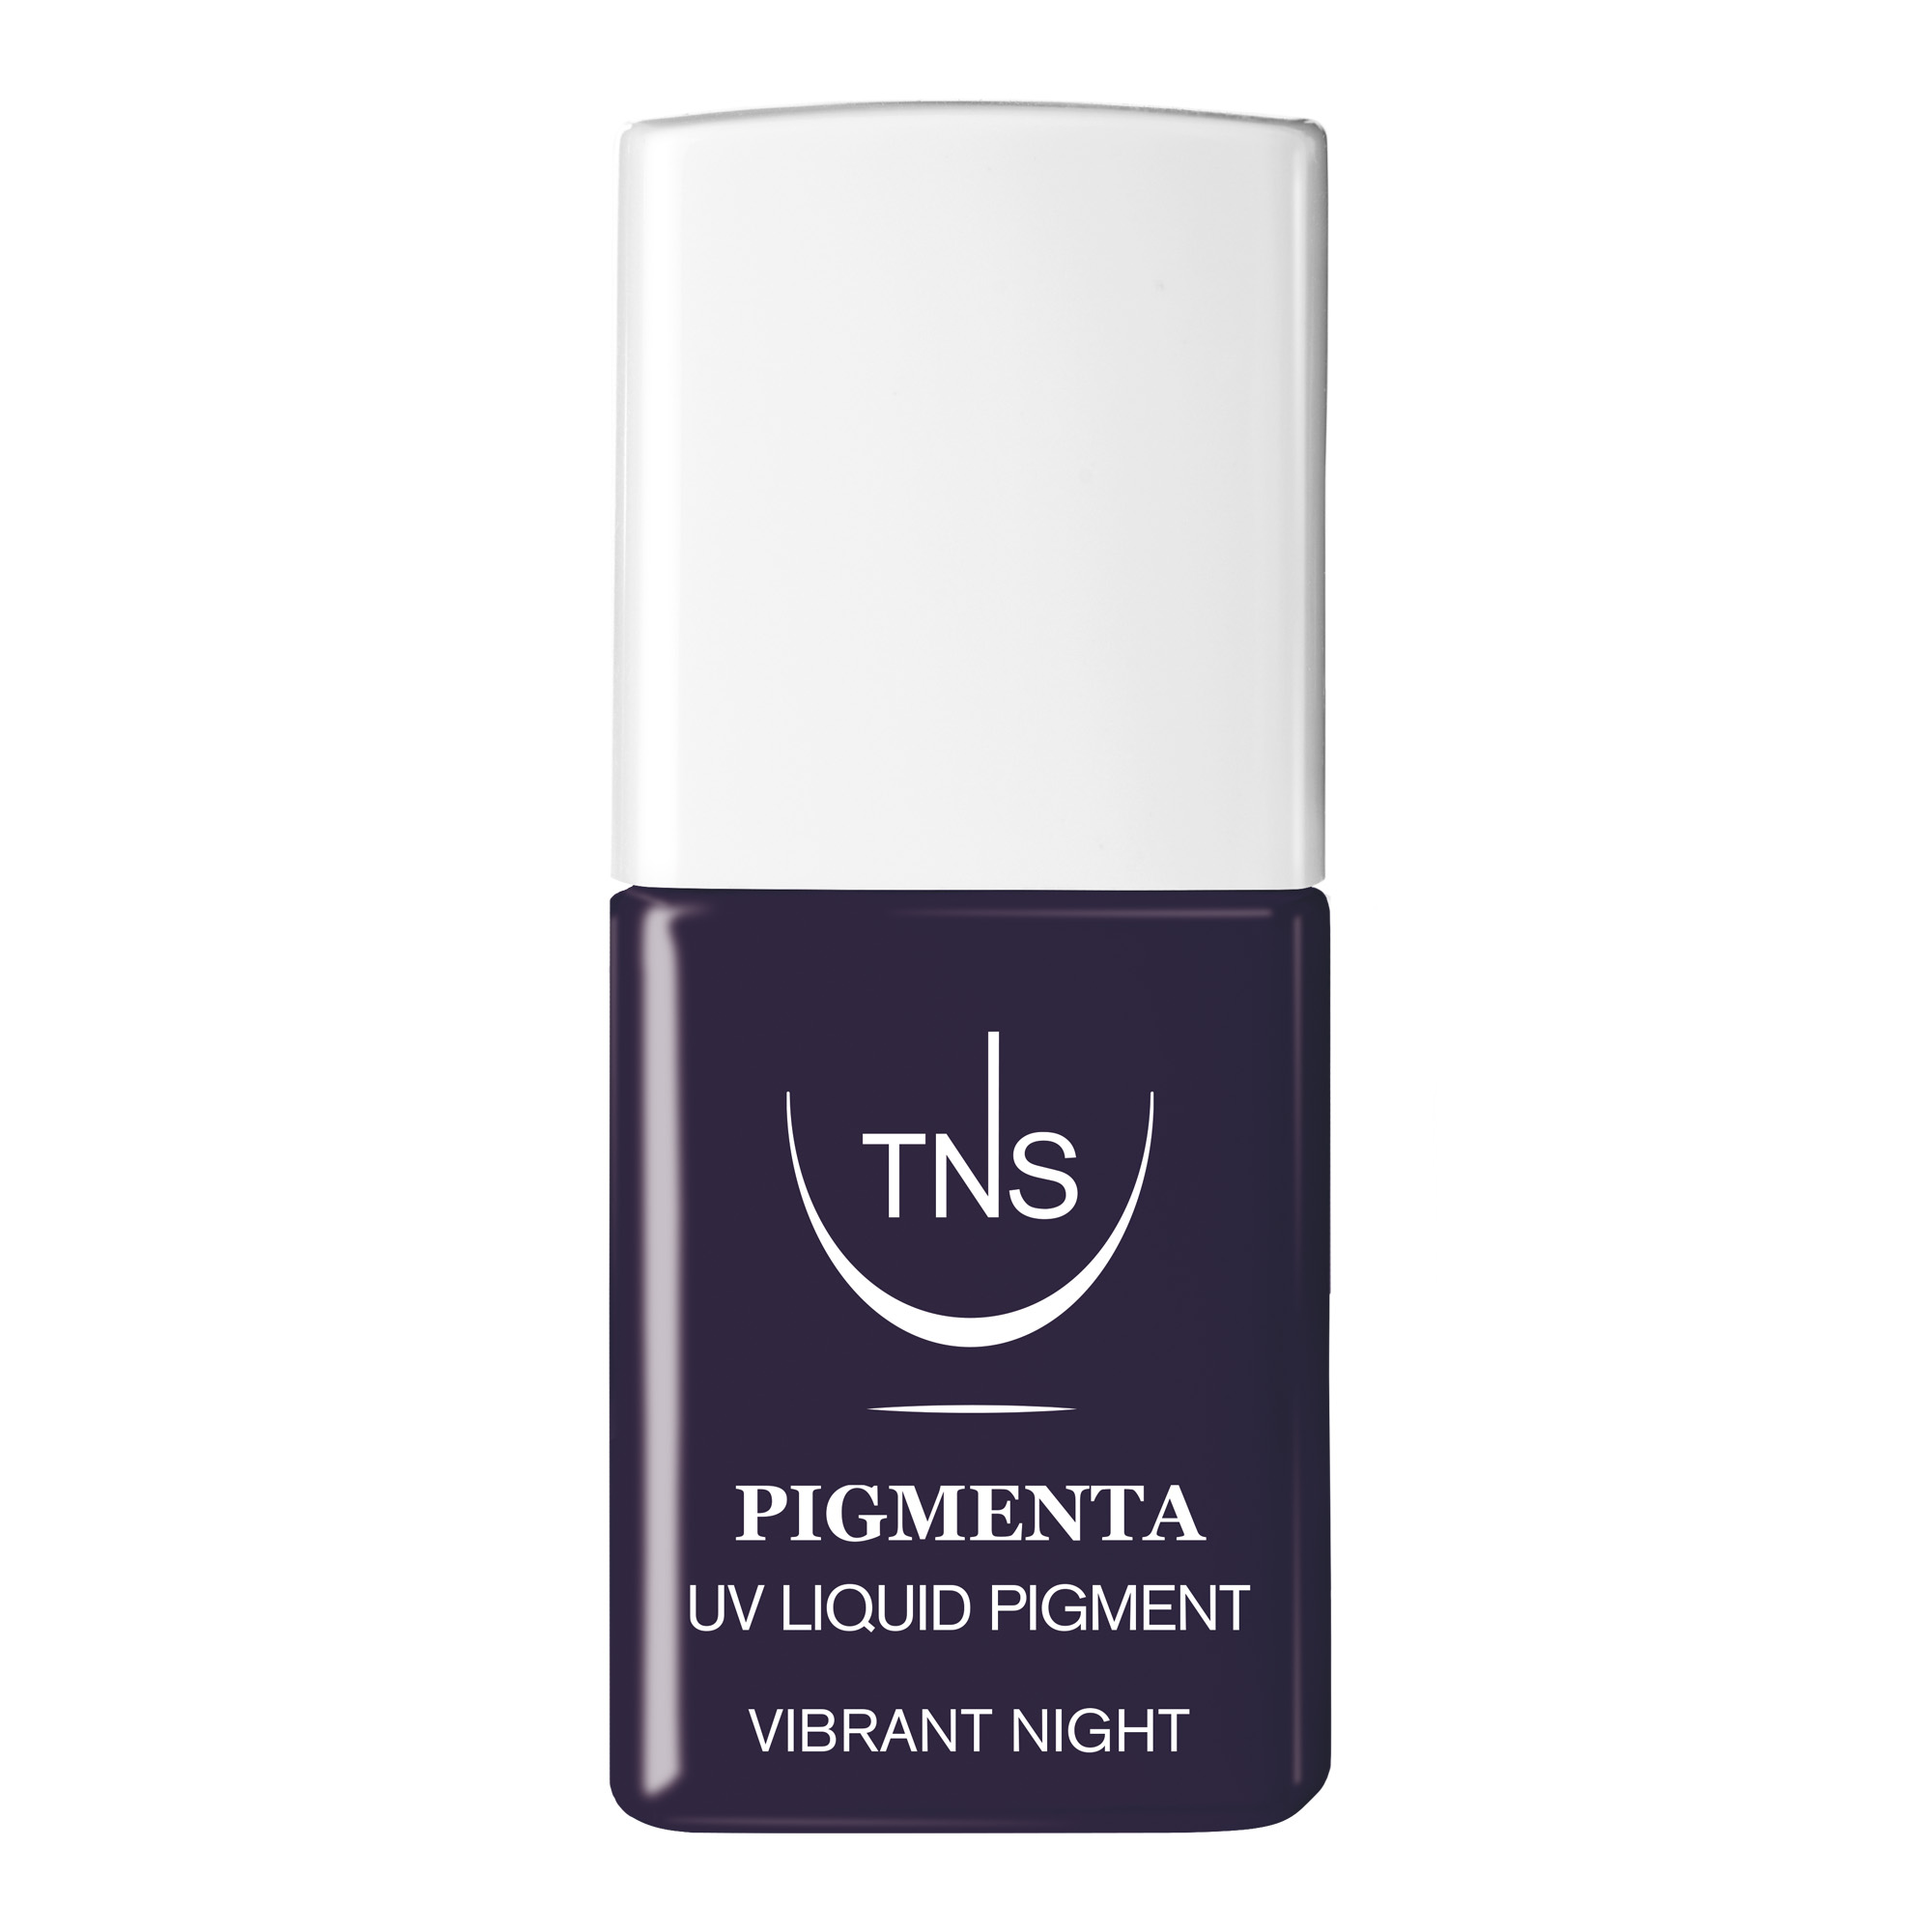 Pigmento Liquido UV Vibrant Night viola scuro 10 ml Pigmenta TNS